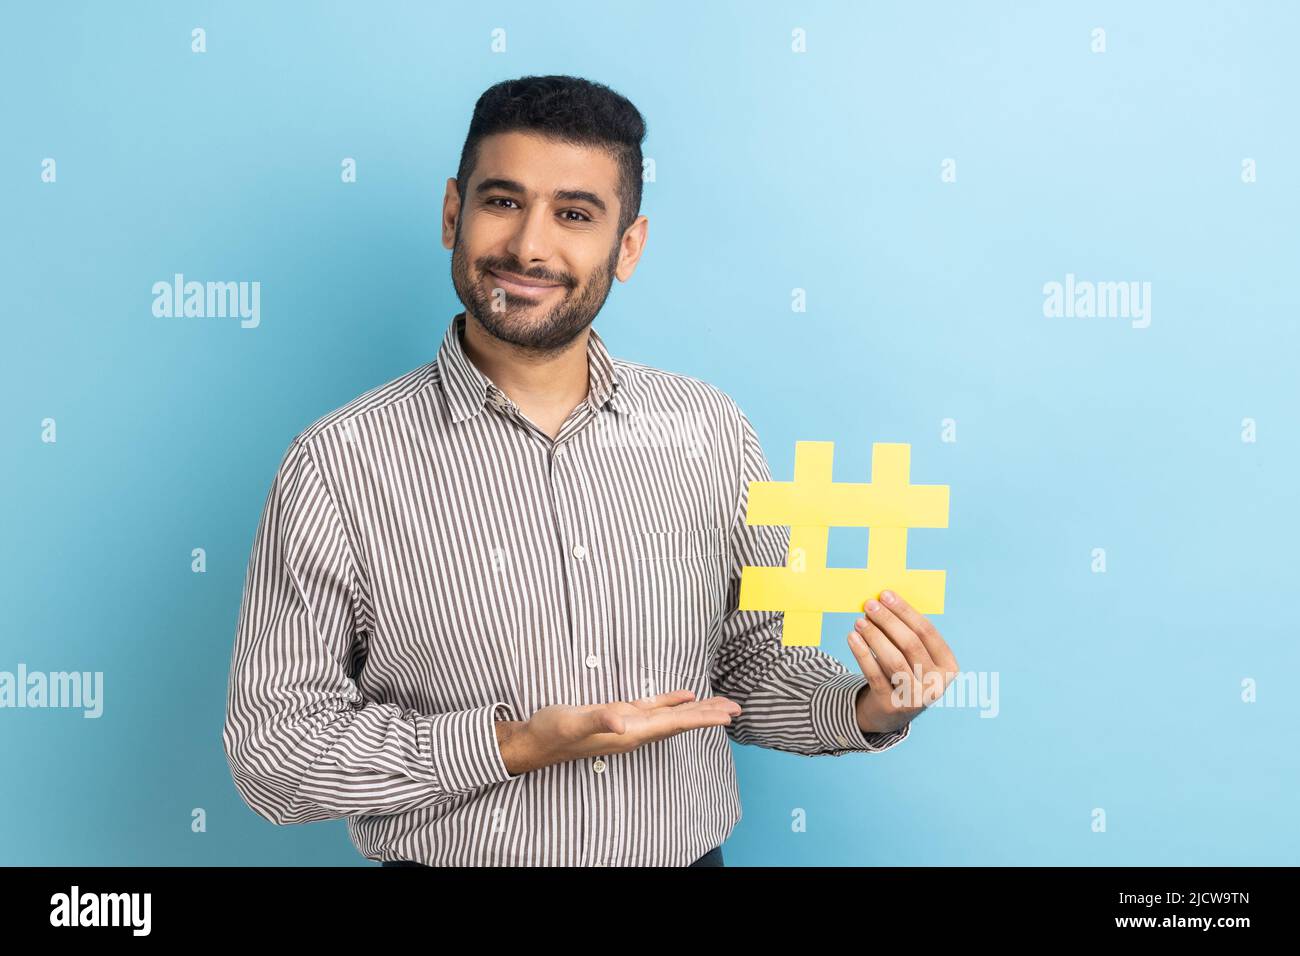 Retrato de un hombre de negocios barbudo sonriente que presenta el hashtag amarillo, las tendencias del blog de marcado, tema viral en la red social, con camisa a rayas. Estudio en interior grabado aislado sobre fondo azul. Foto de stock